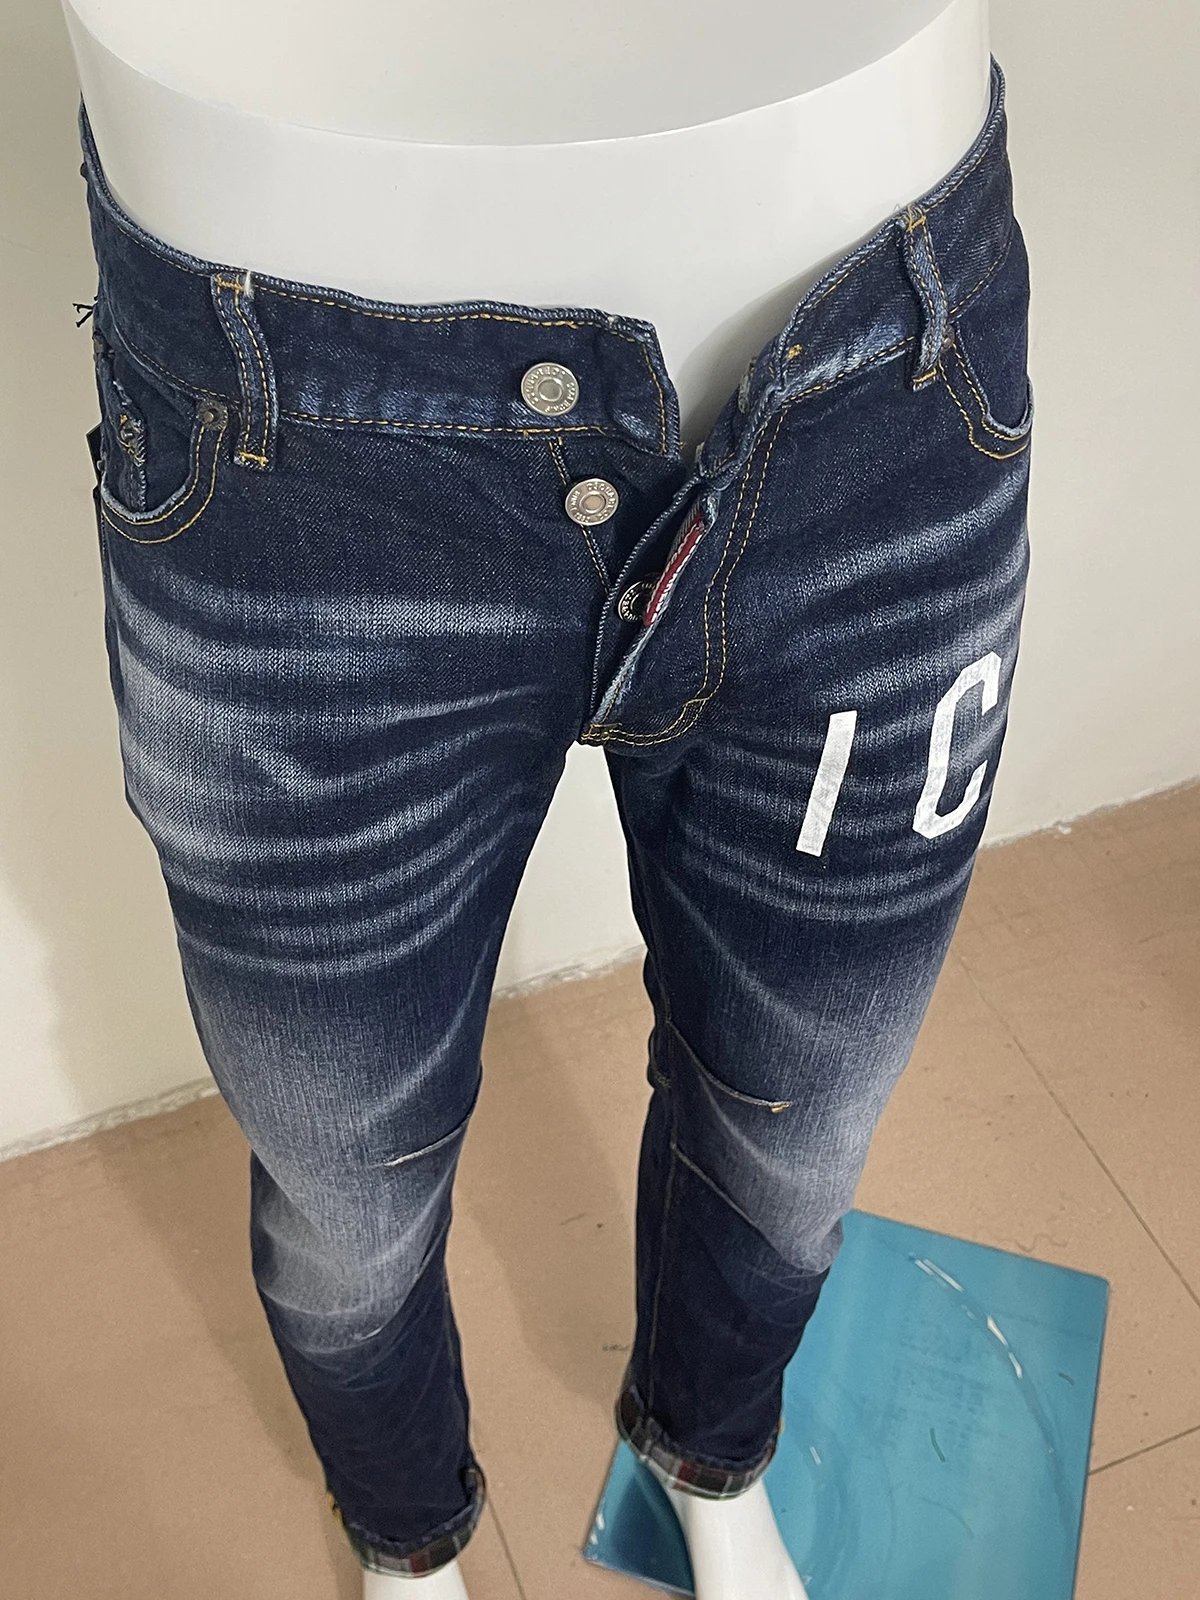 Denim Zipper Patch | D2 Jeans Clothing | D2 Jeans Zipper | Slim Jeans D2 |  D2 Jeans 2021 - Jeans - Aliexpress